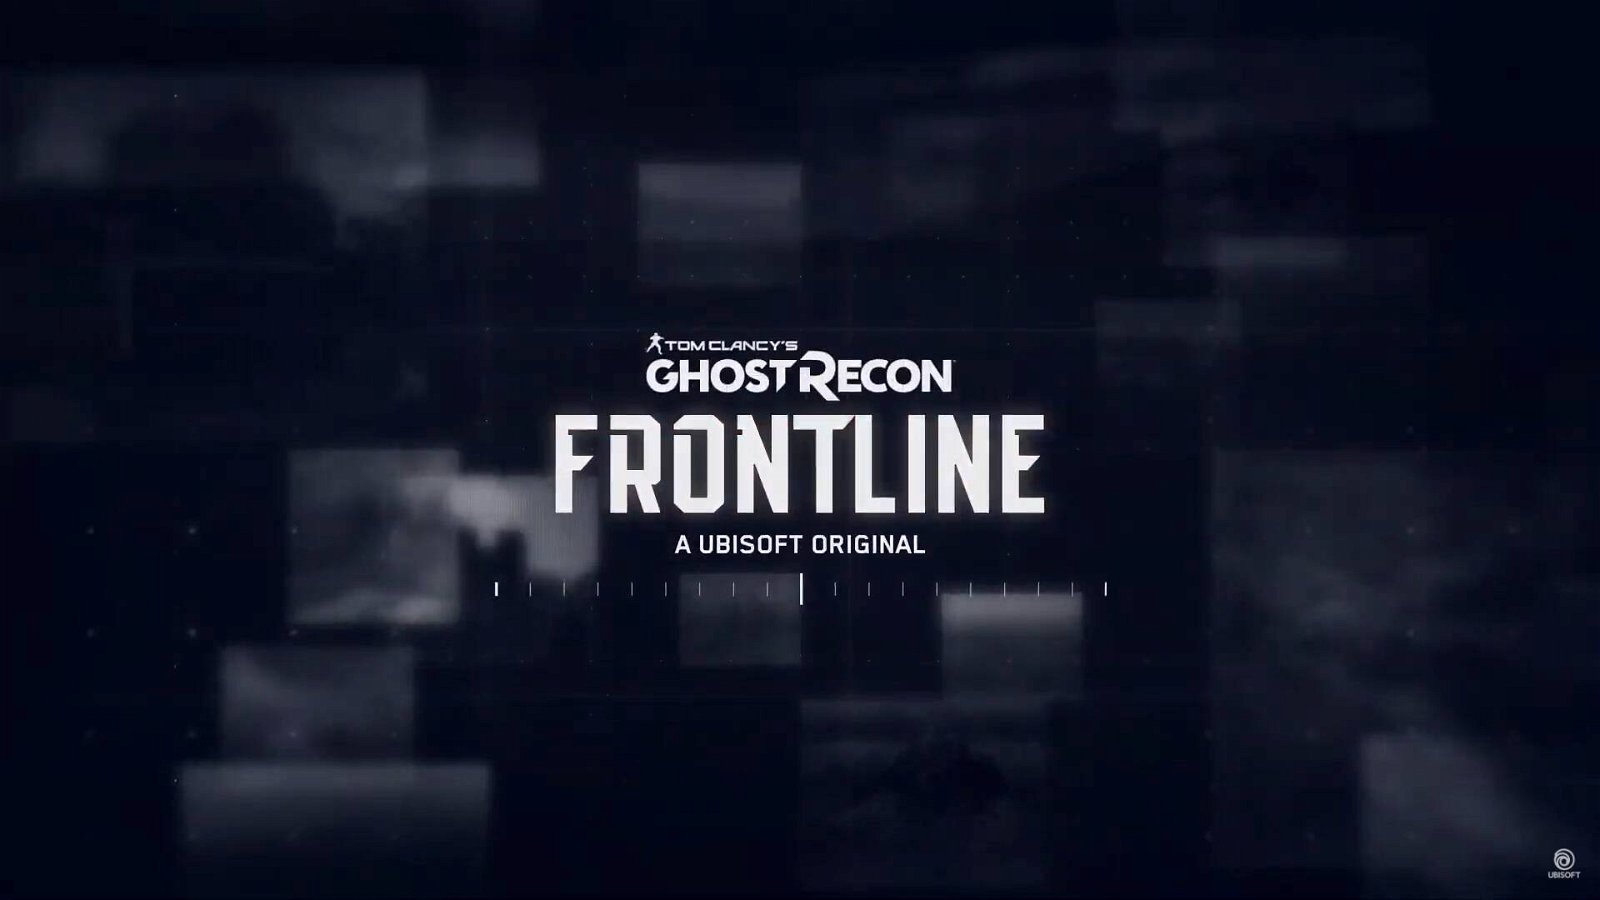 Immagine di Ghost Recon Frontline, annunciato il nuovo titolo della serie